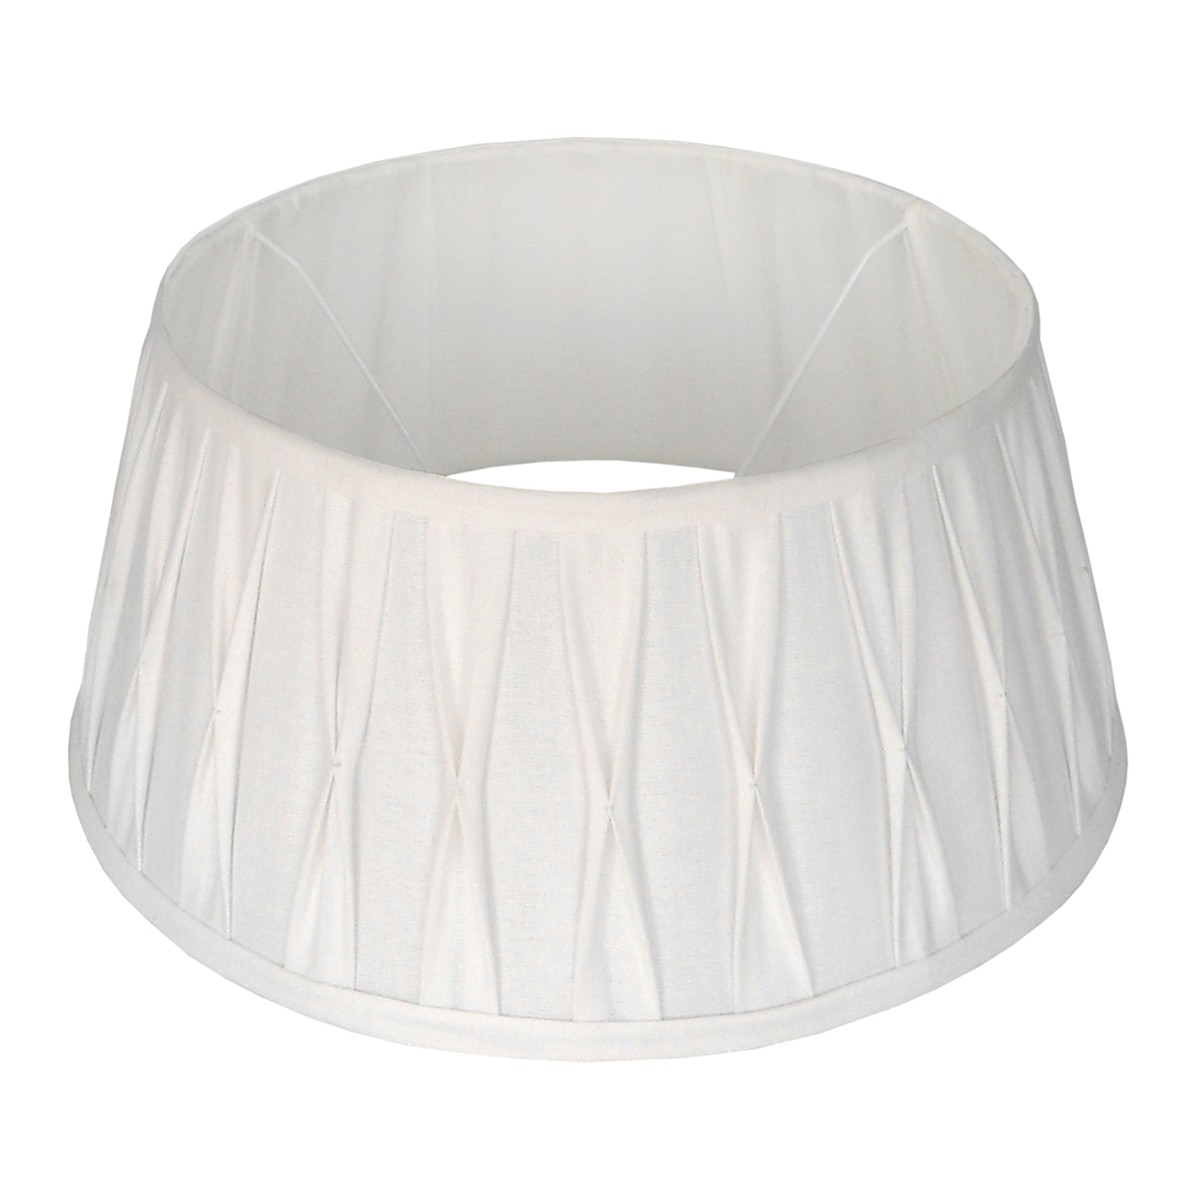 Lampenschirm weiß rund,  Durchmesser 20 cm